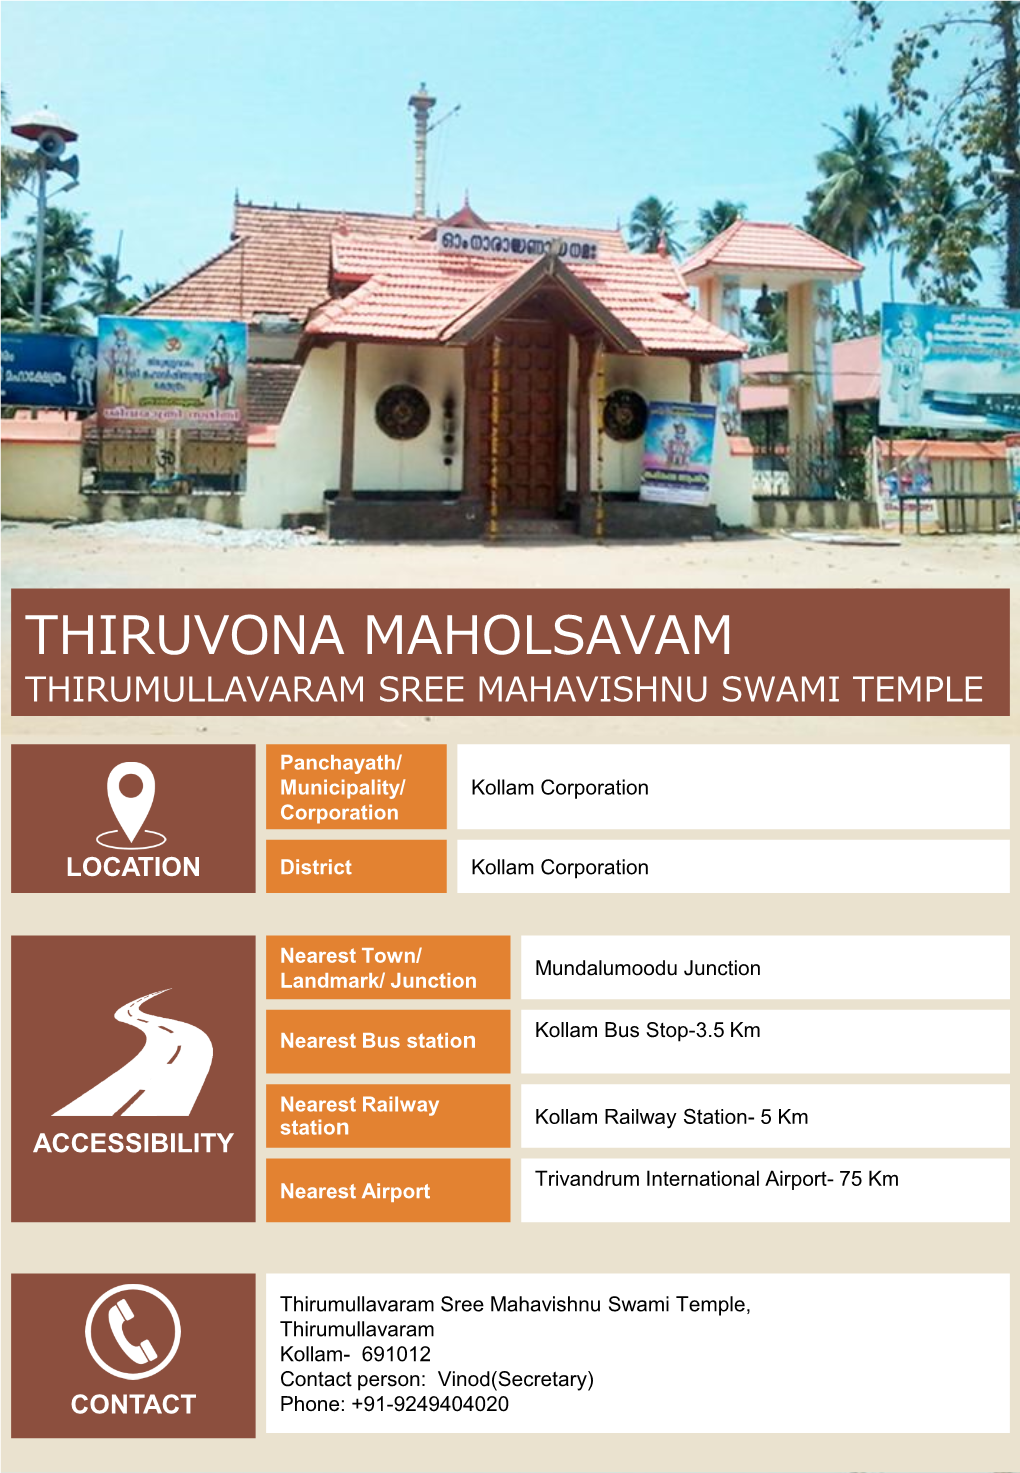 Thiruvona Maholsavam Thirumullavaram Sree Mahavishnu Swami Temple